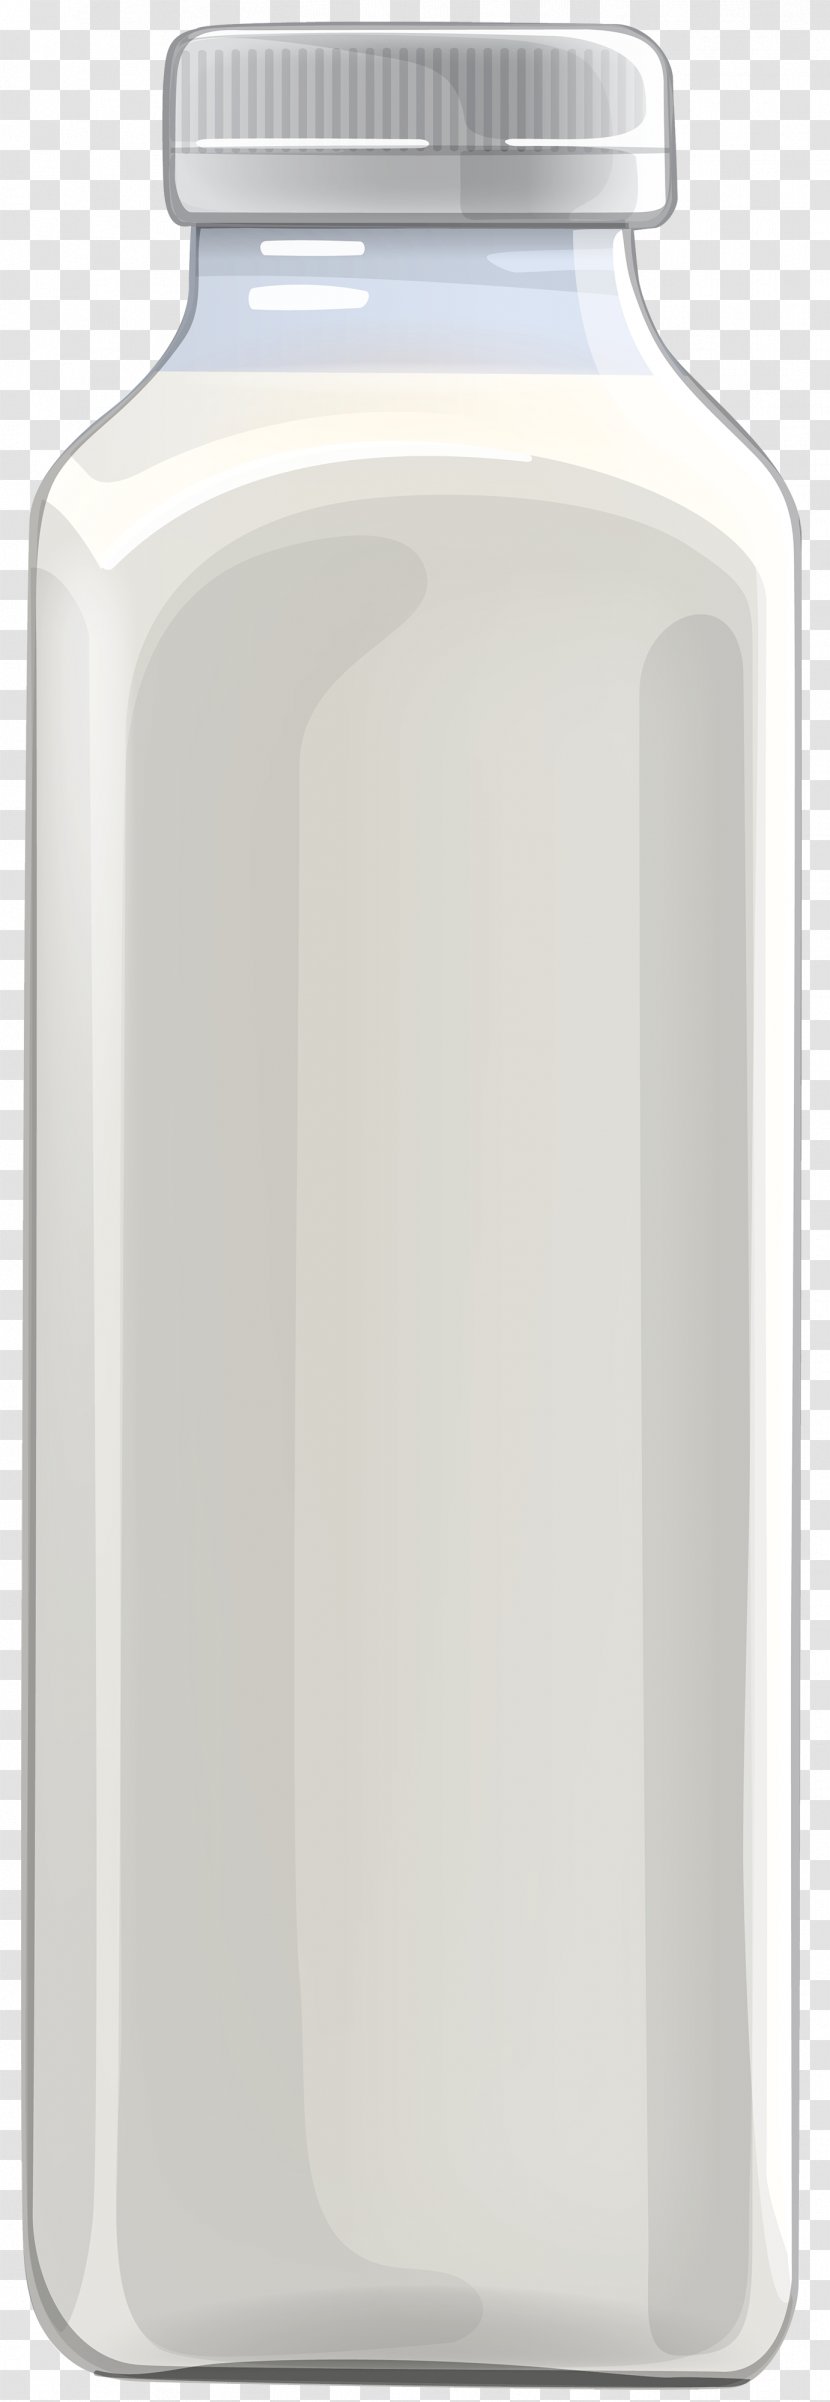 Plastic Bottle Lid Drink - Drinkware - Milk Transparent PNG